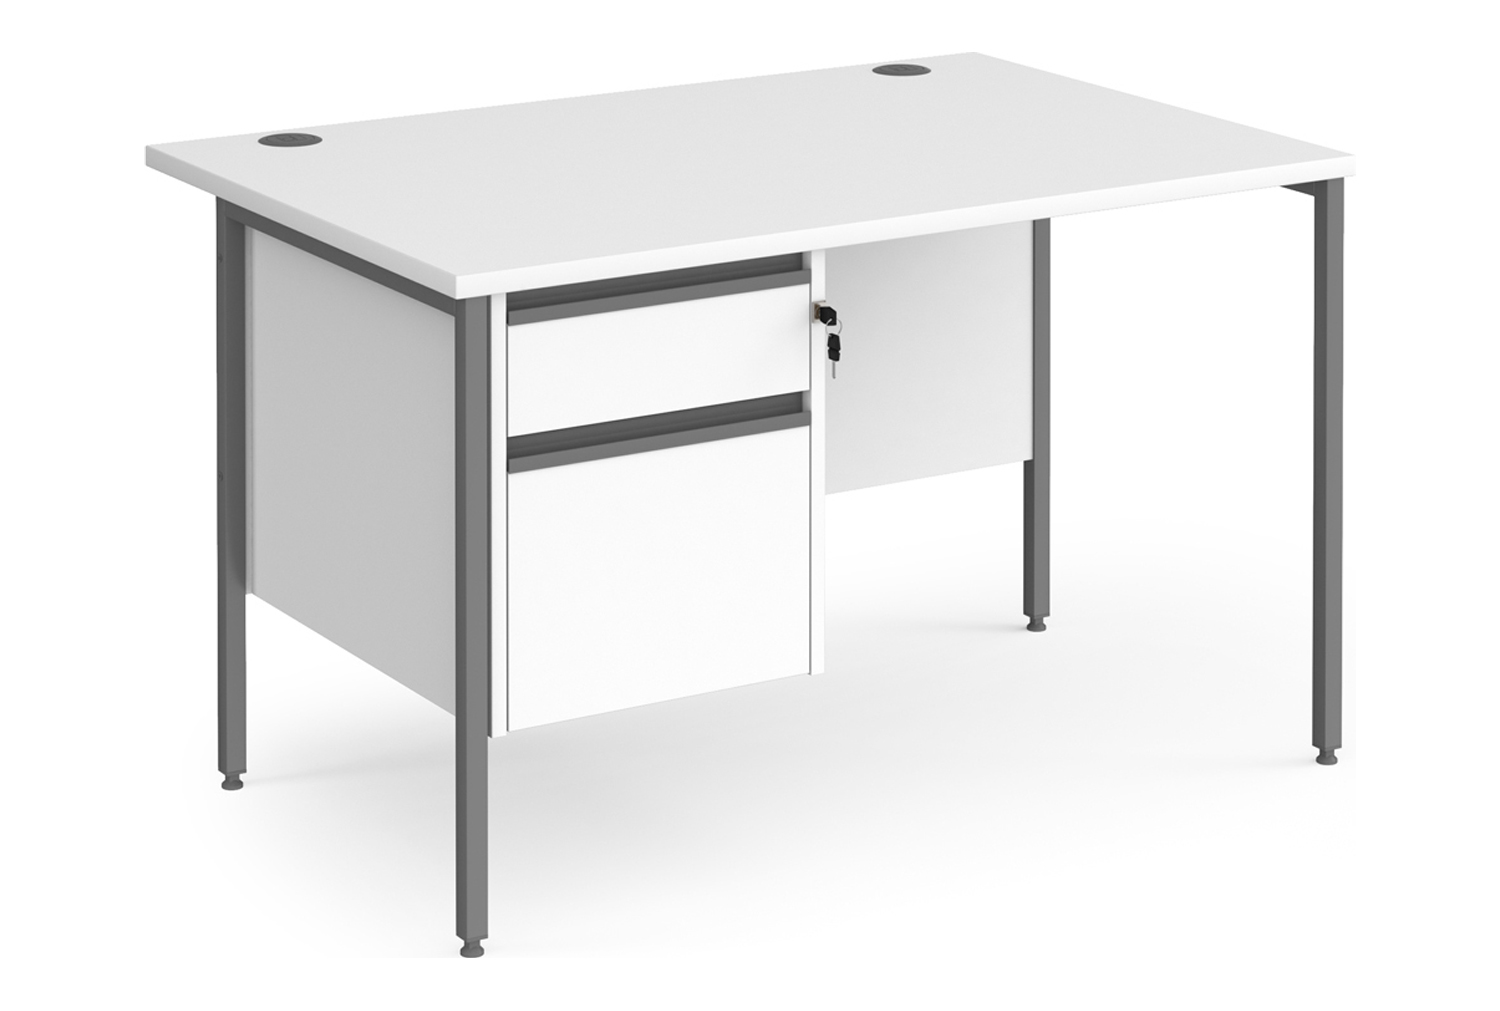 Value Line Classic+ Rectangular H-Leg Office Desk 2 Drawers (Graphite Leg), 120wx80dx73h (cm), White